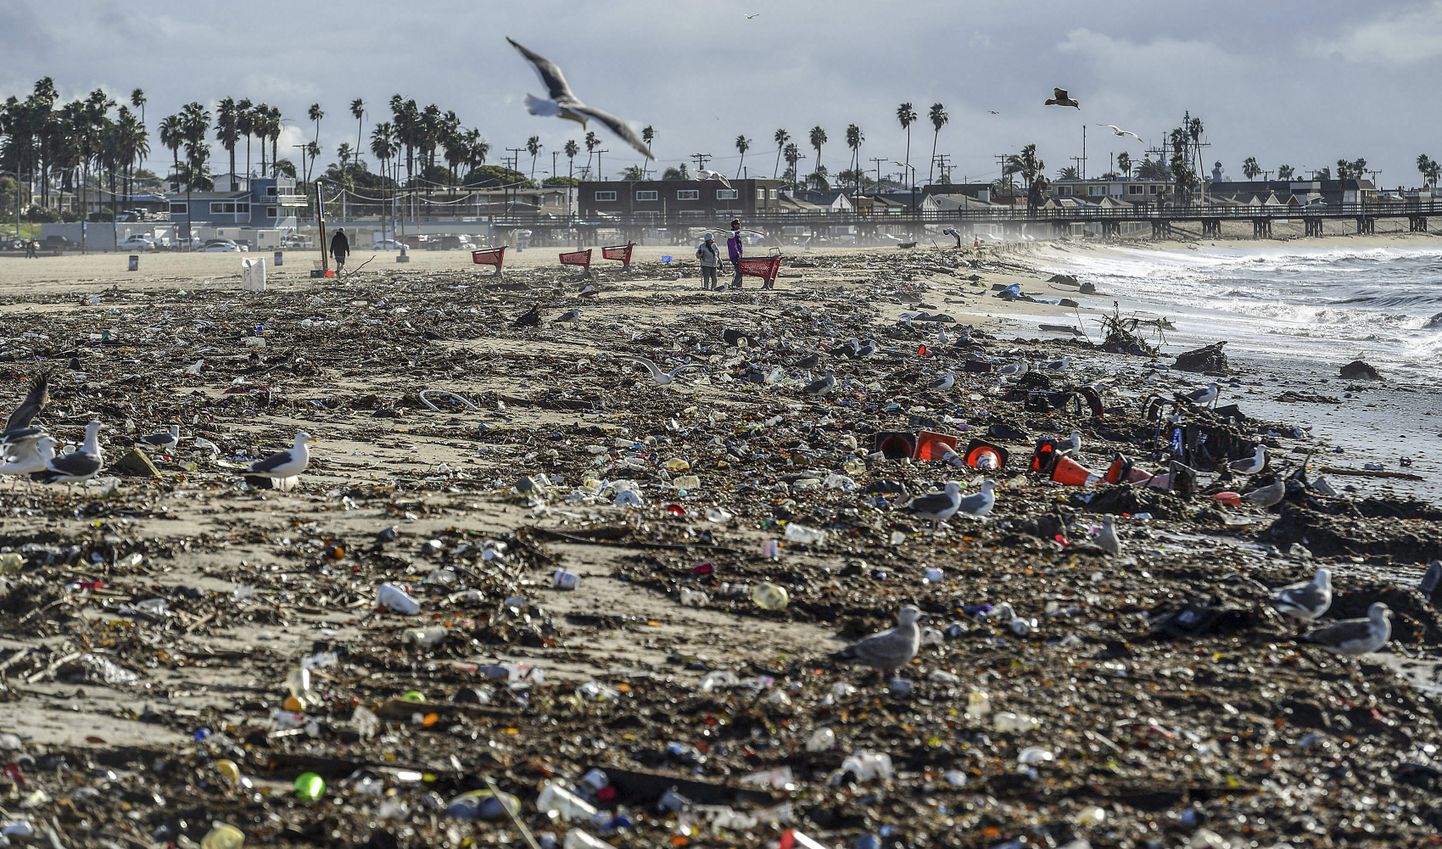 Torm on toonud plastikprügi ookeanist rannale. Pilt on tehtud USAs California osariigis.